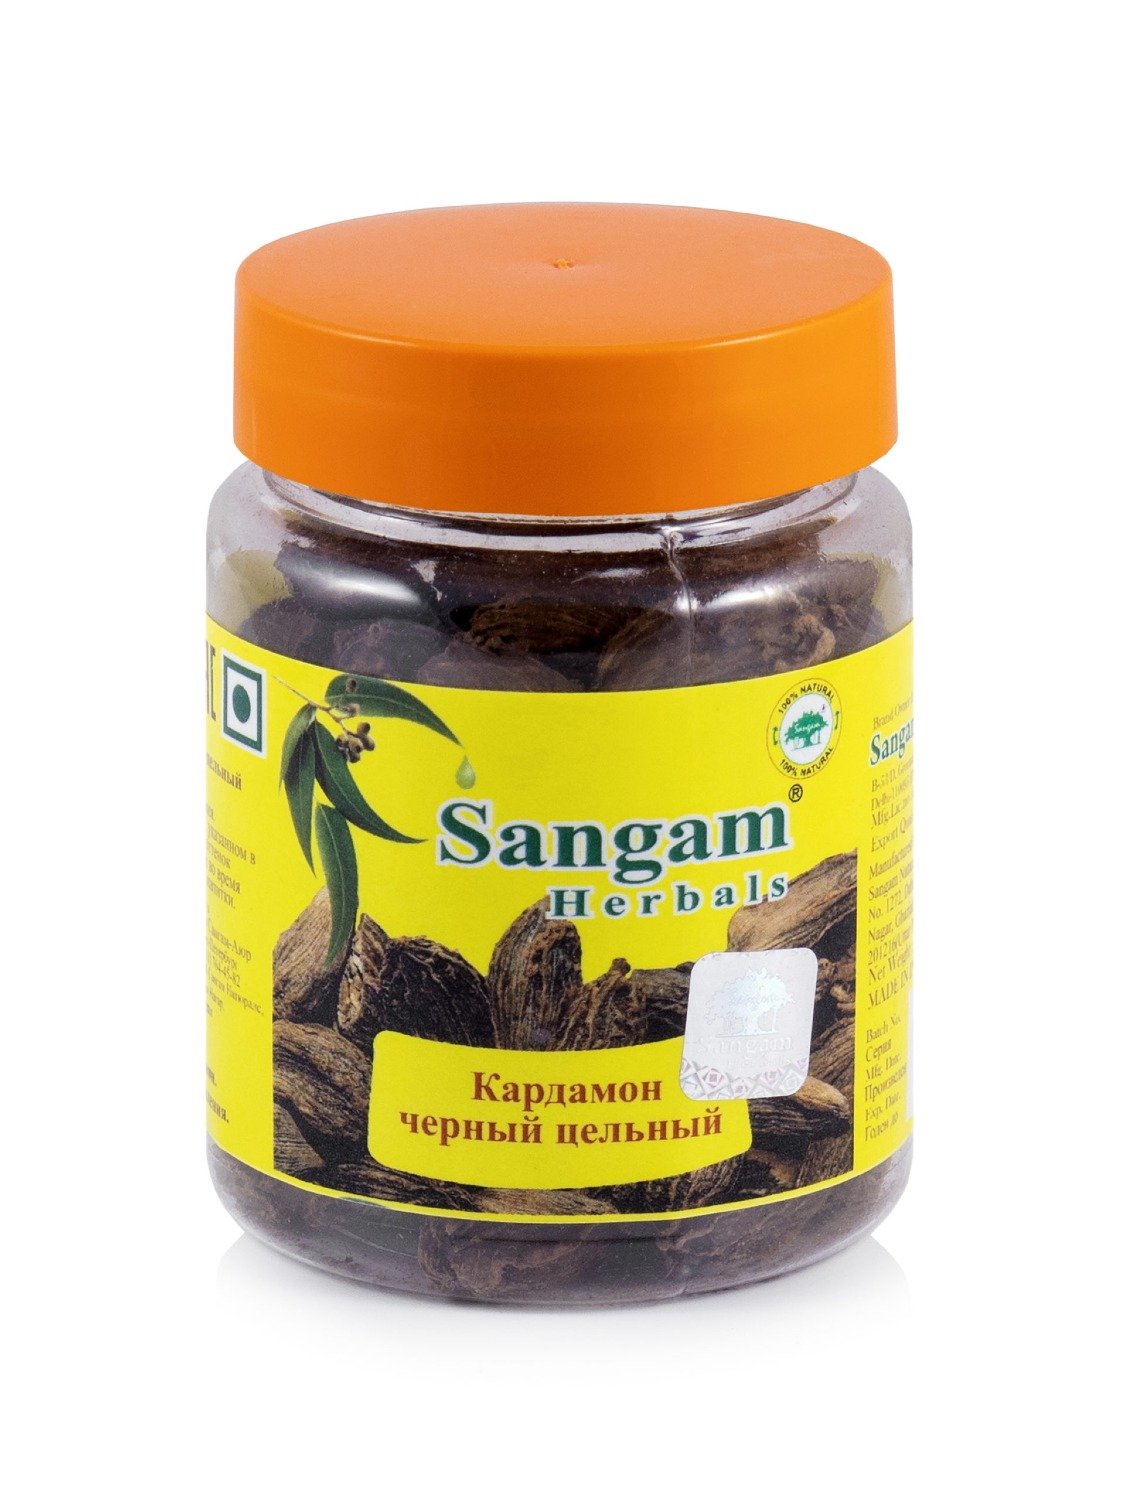 Купить Кардамон черный цельный Sangam Herbals (50 г) в интернет-магазине #store#